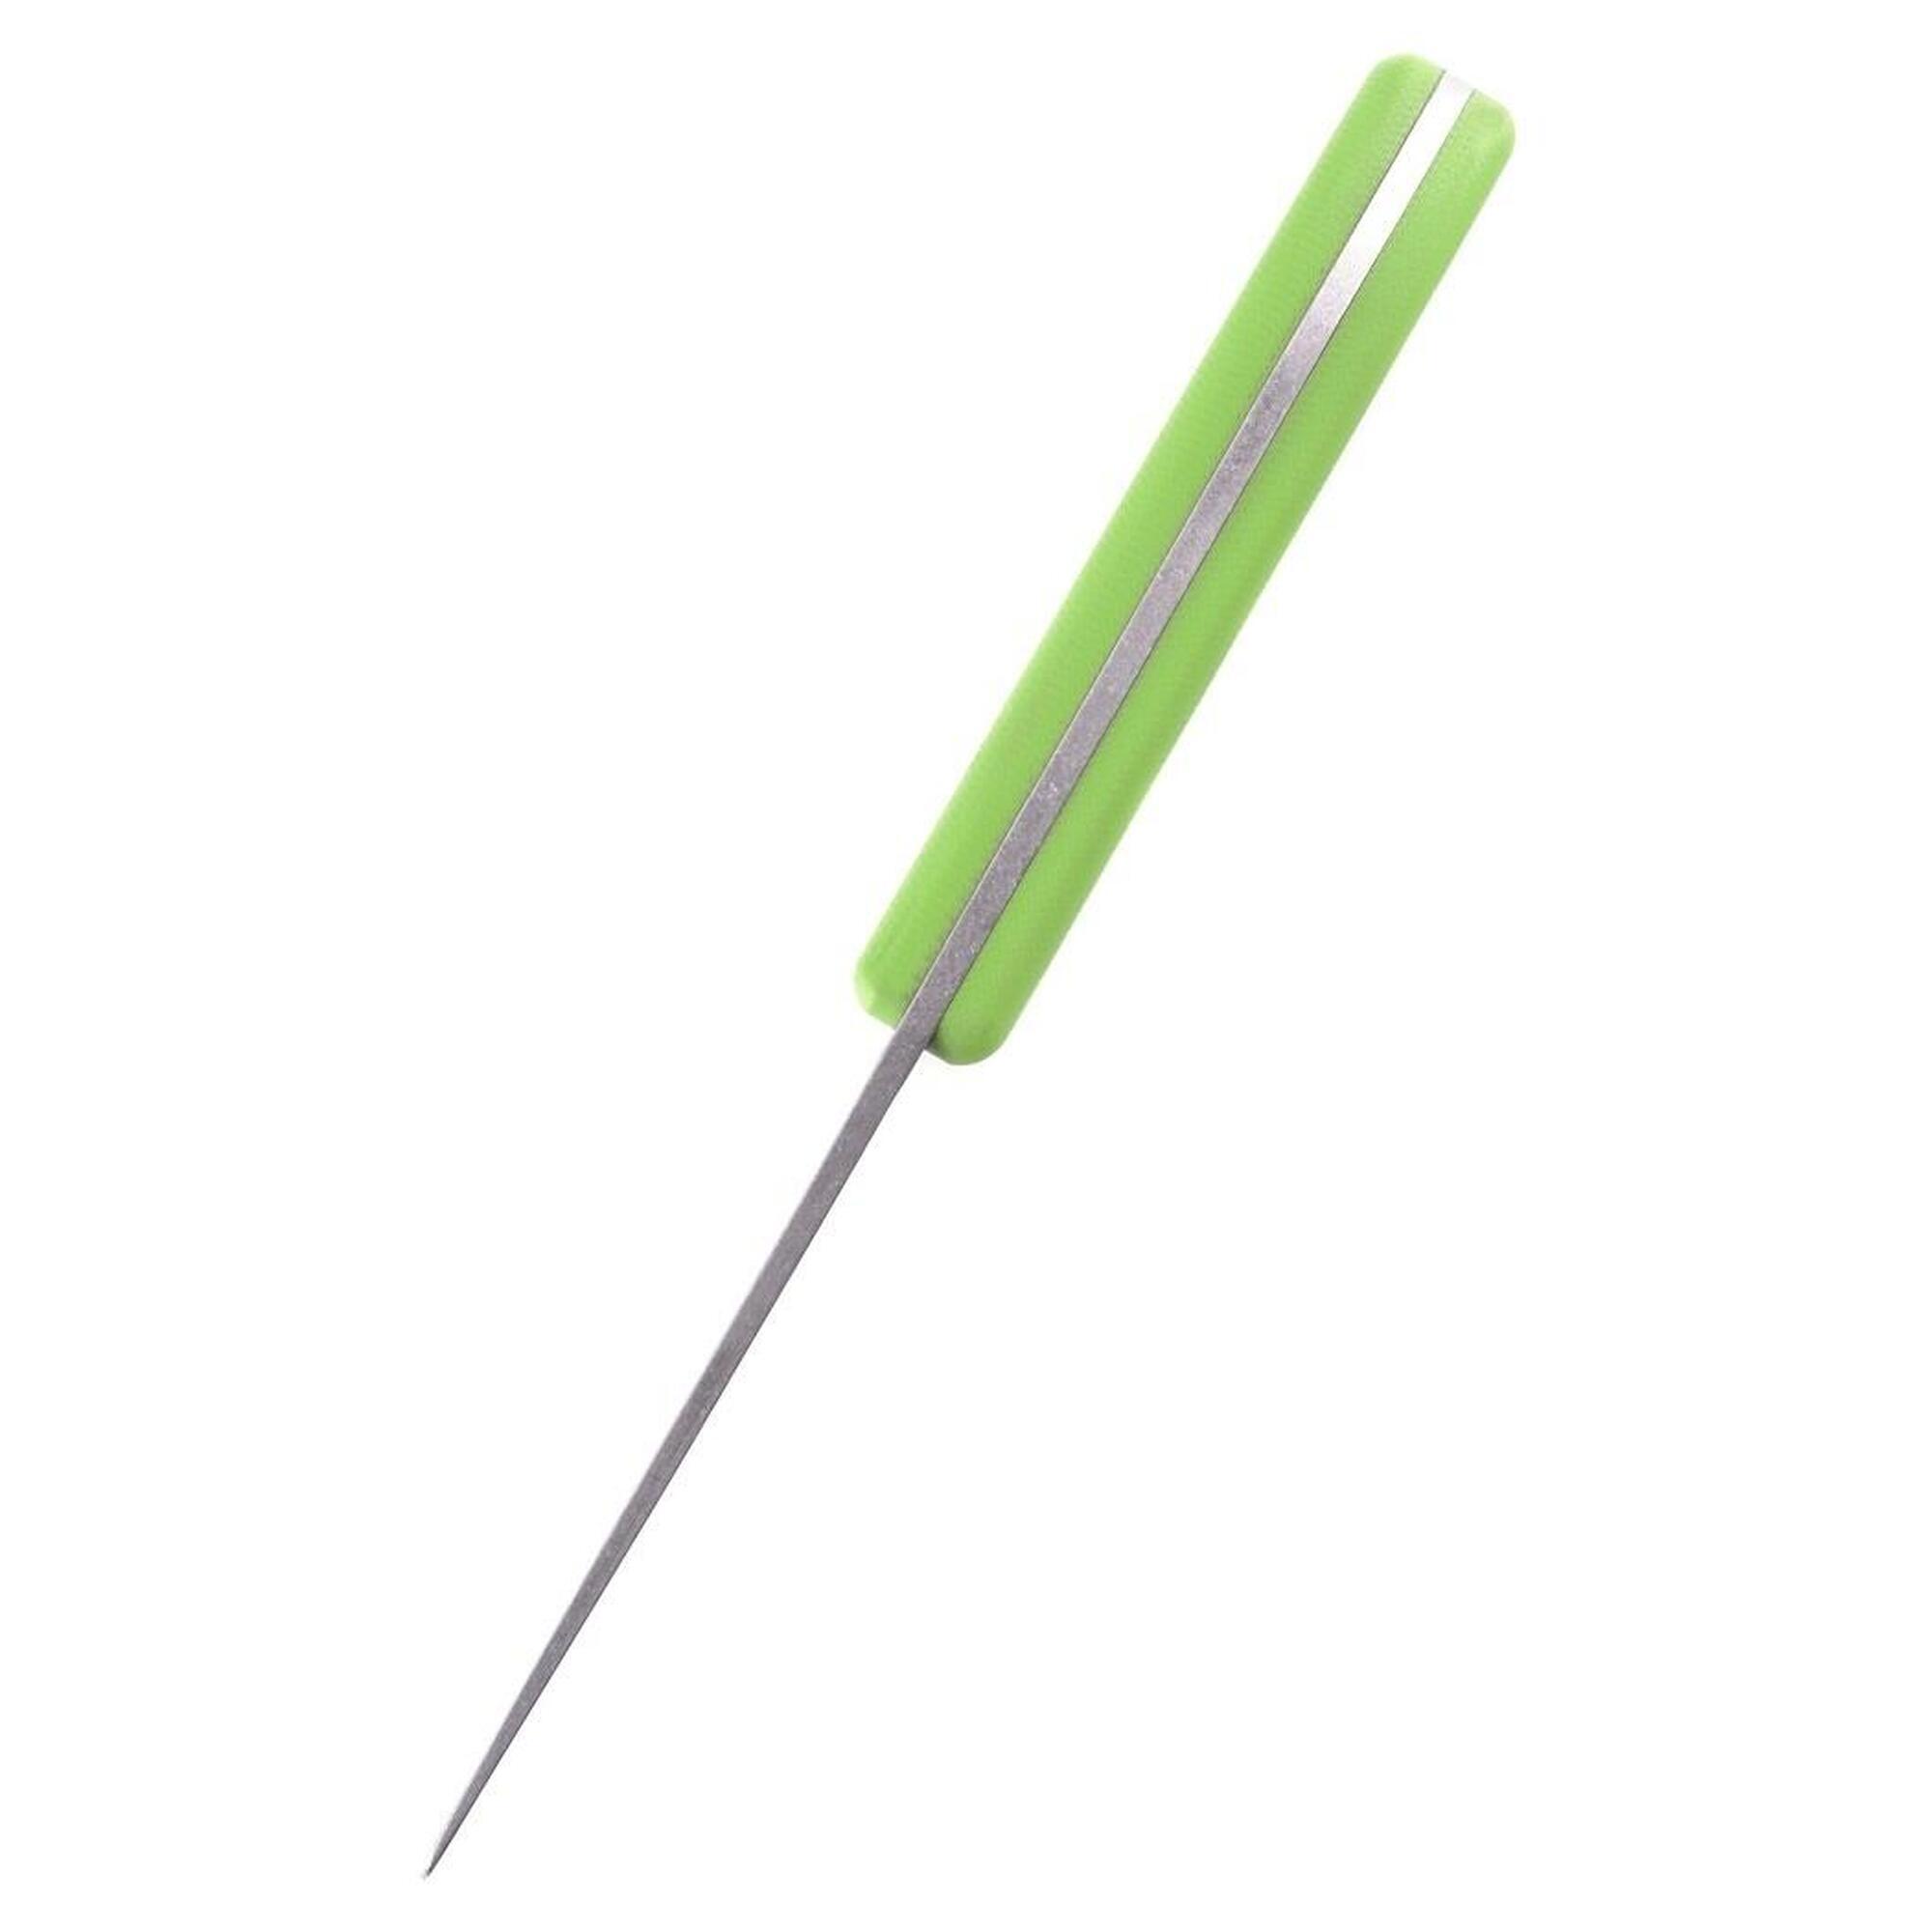 Schnitzel UNU Kinderschnitzmesser mit G10 - Griff in Grün